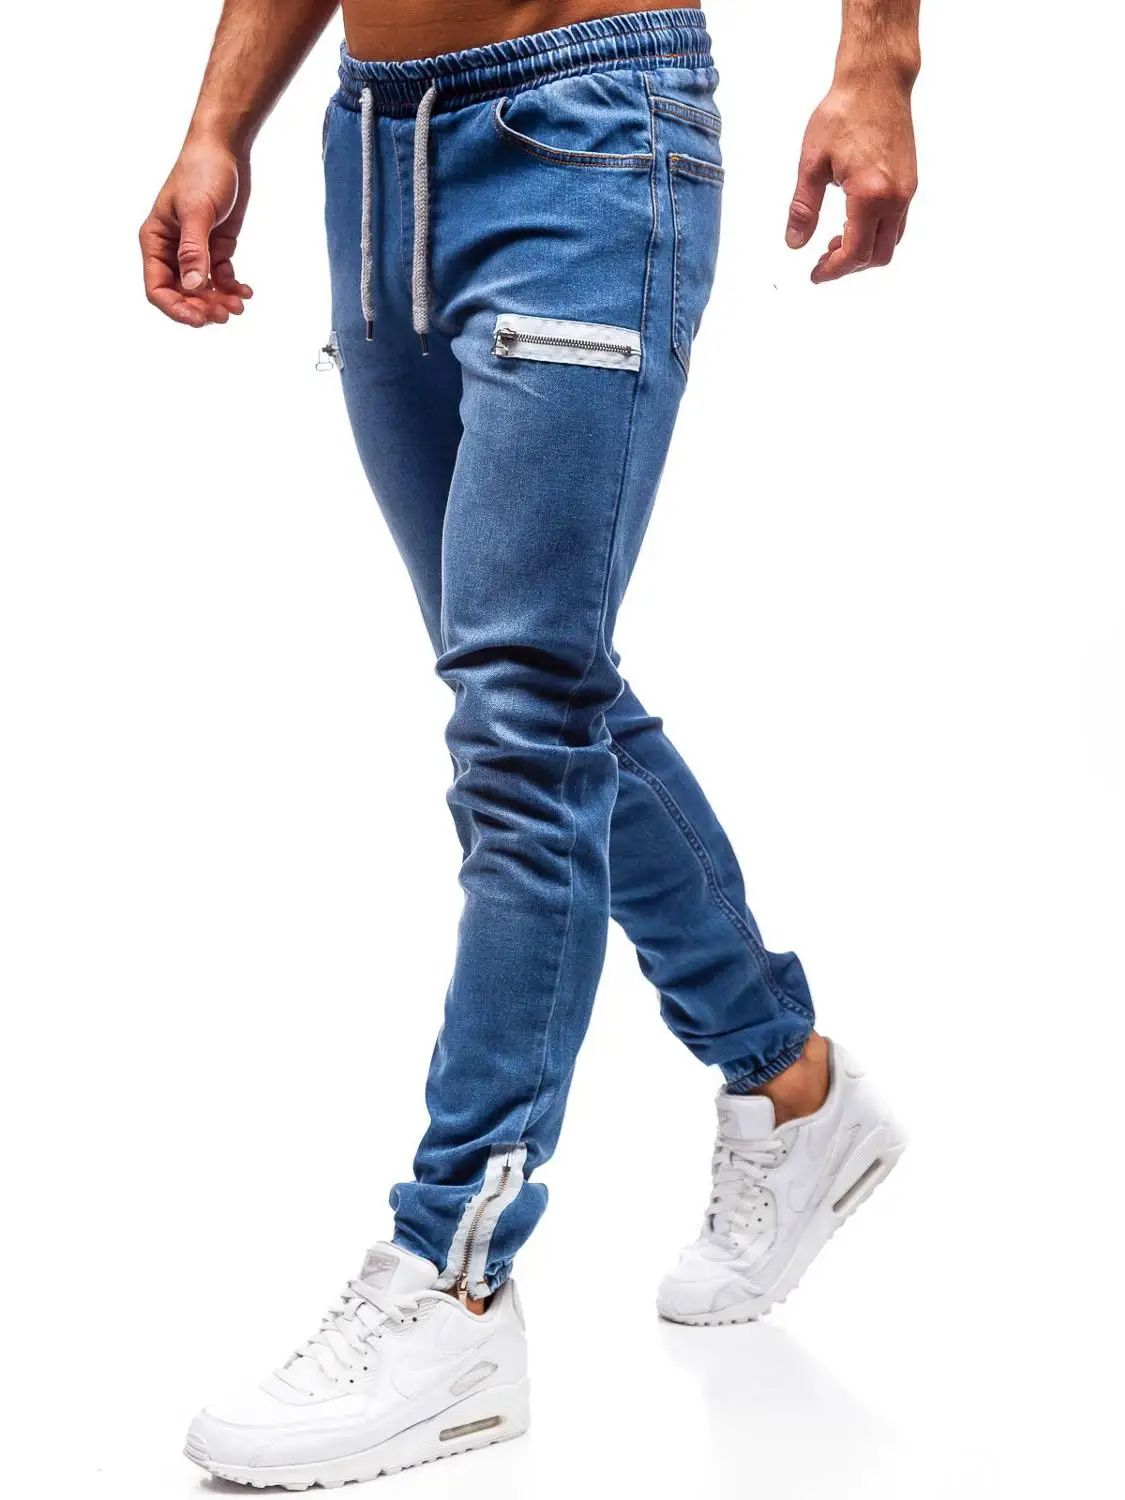 Мужские классические джинсы, узкие брюки на молнии, спортивные джинсы, повседневные эластичные штаны, джинсы для бега высокого качества - Цвет: Dark blue